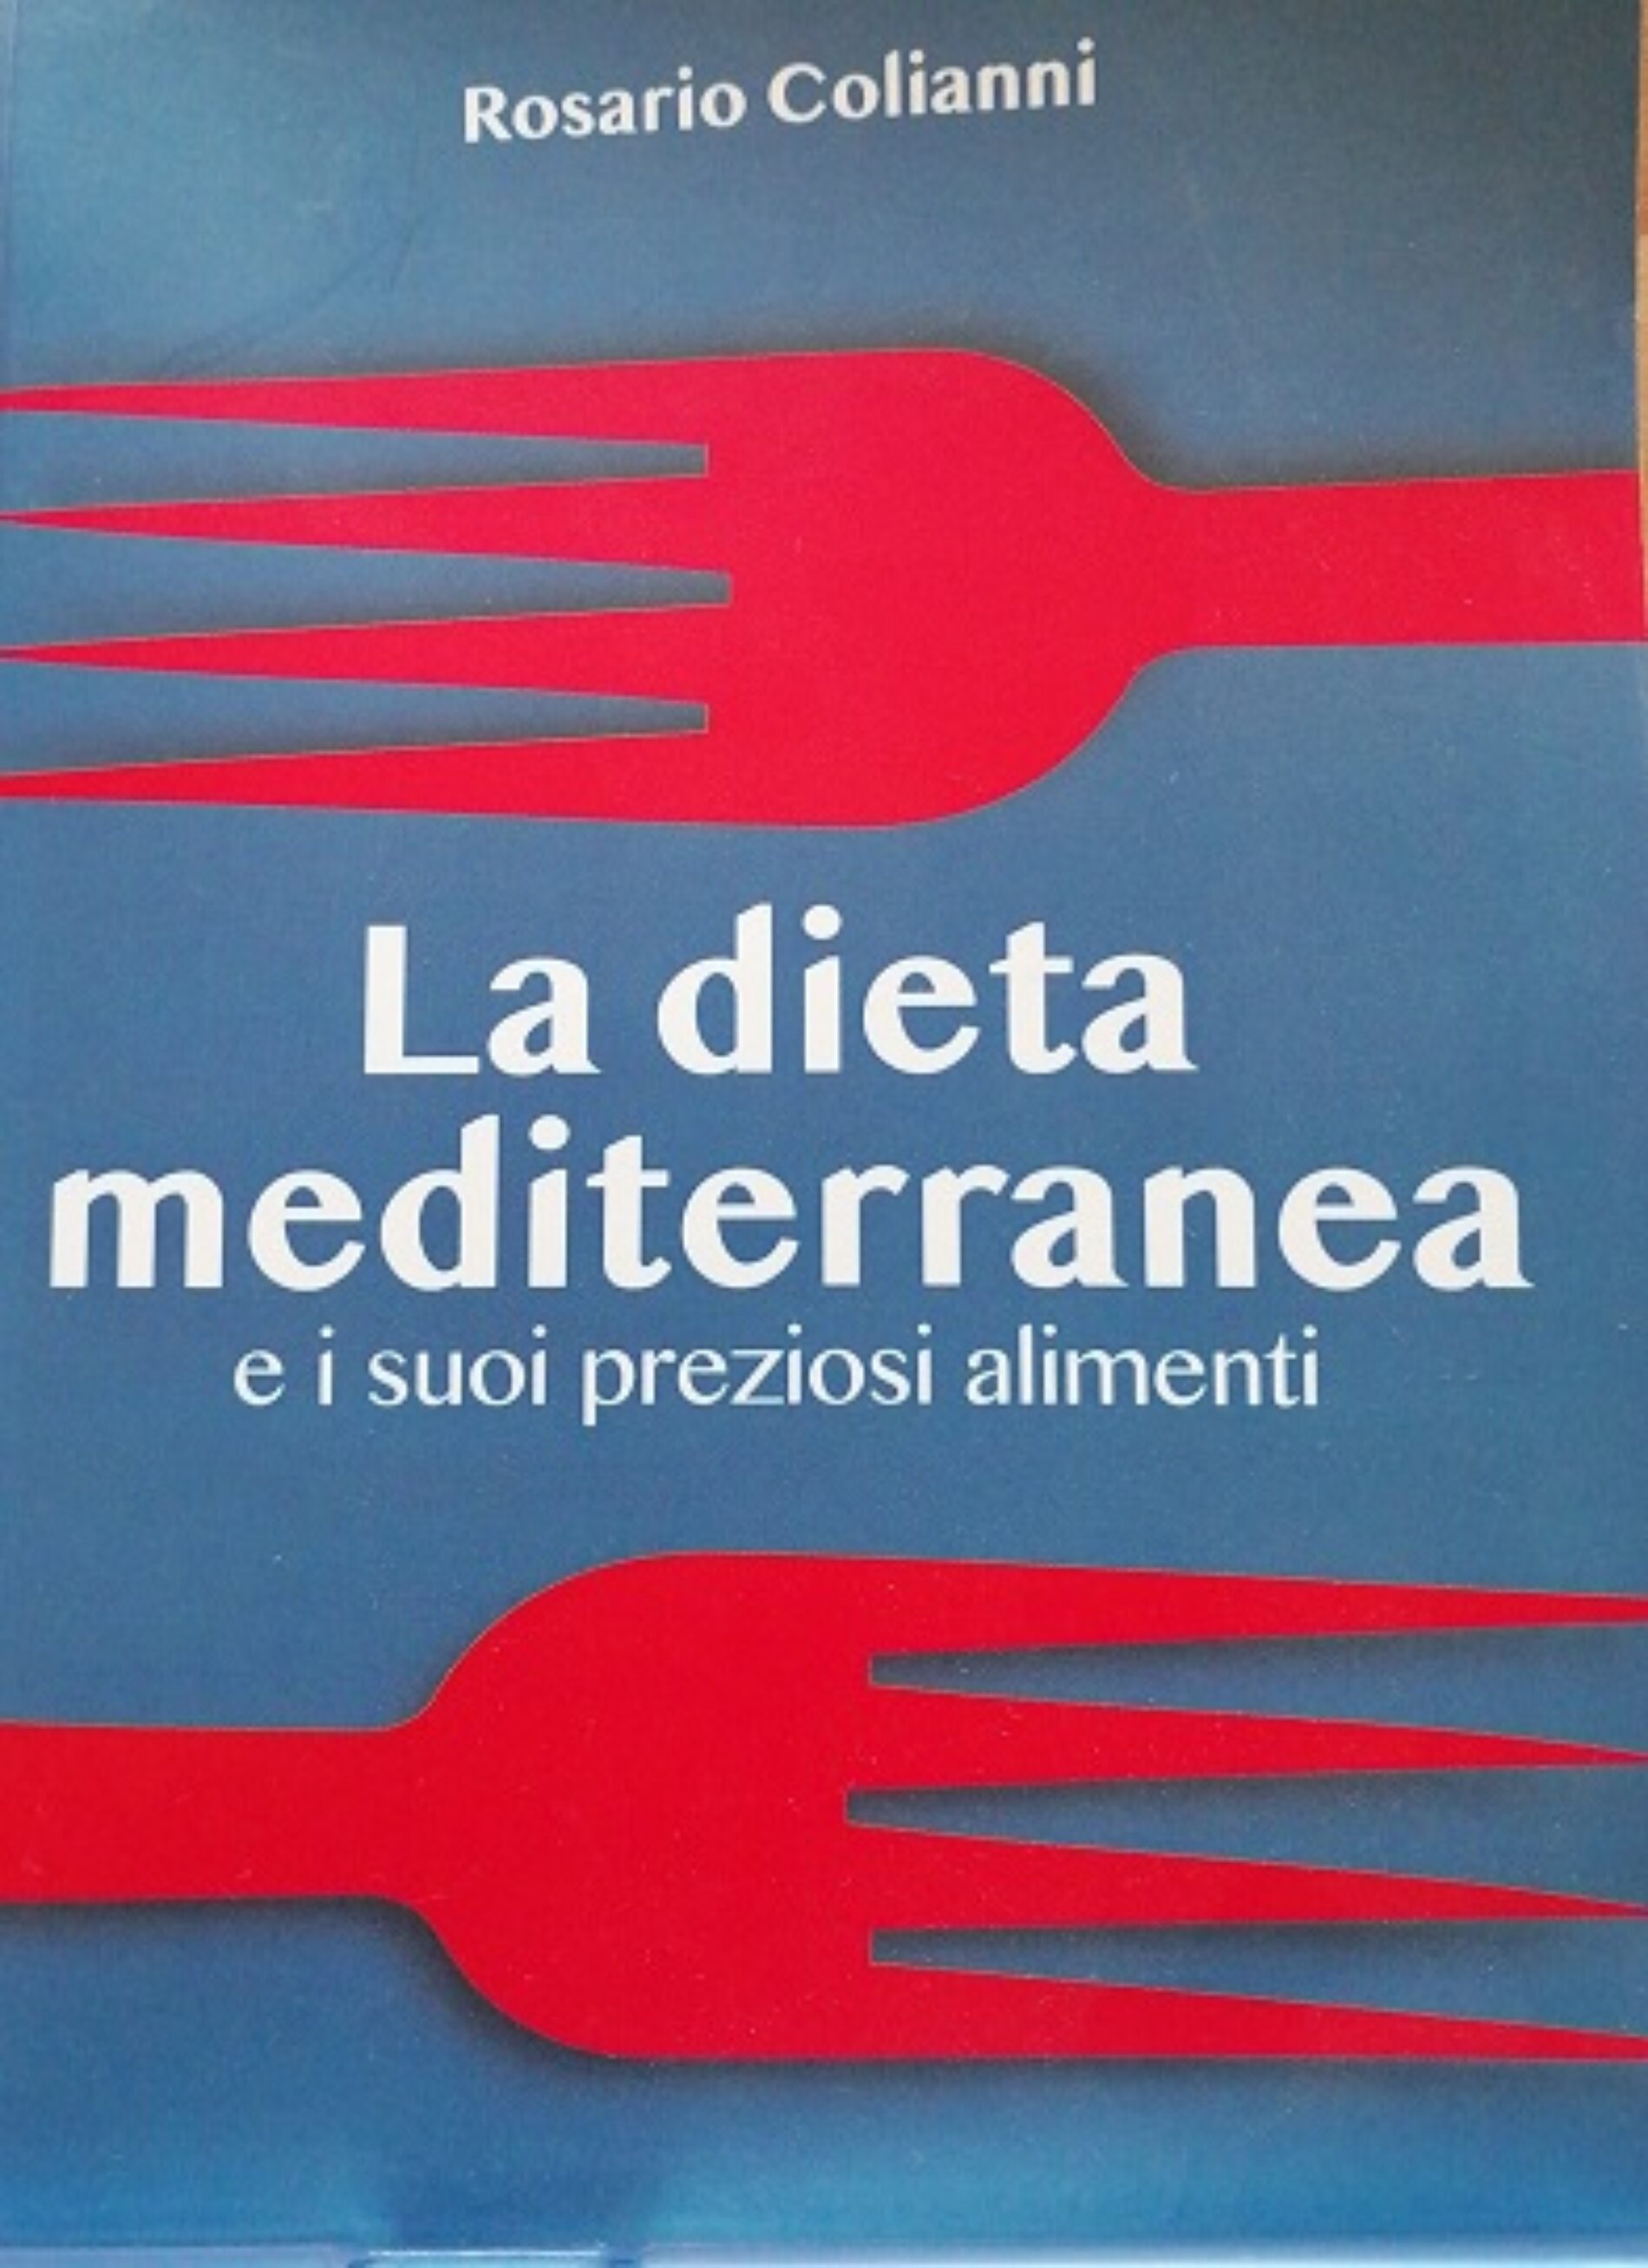 Enna. La Dieta mediterranea. Presentazione e dibattito.